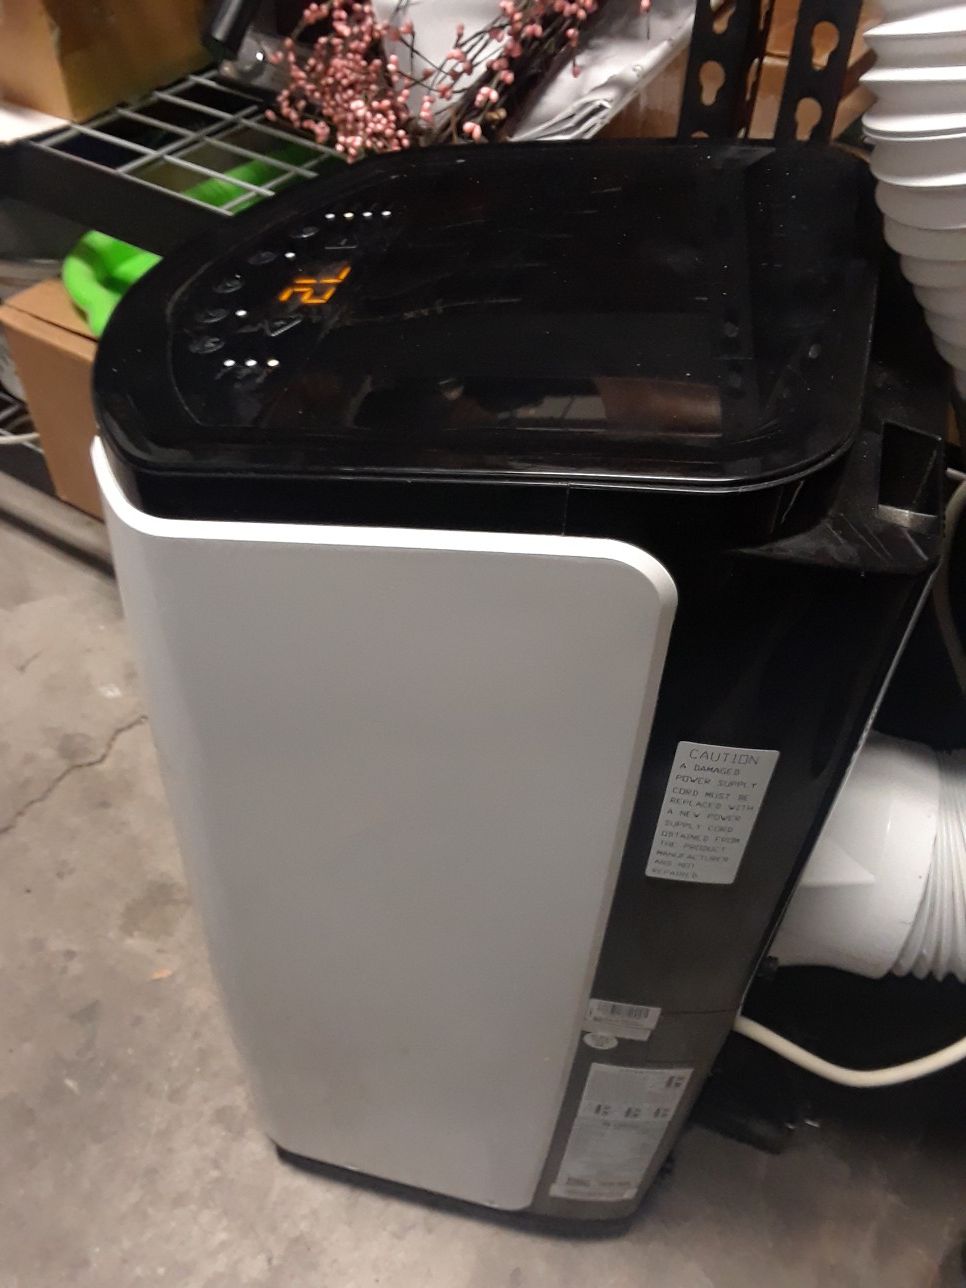 Portable air conditioner